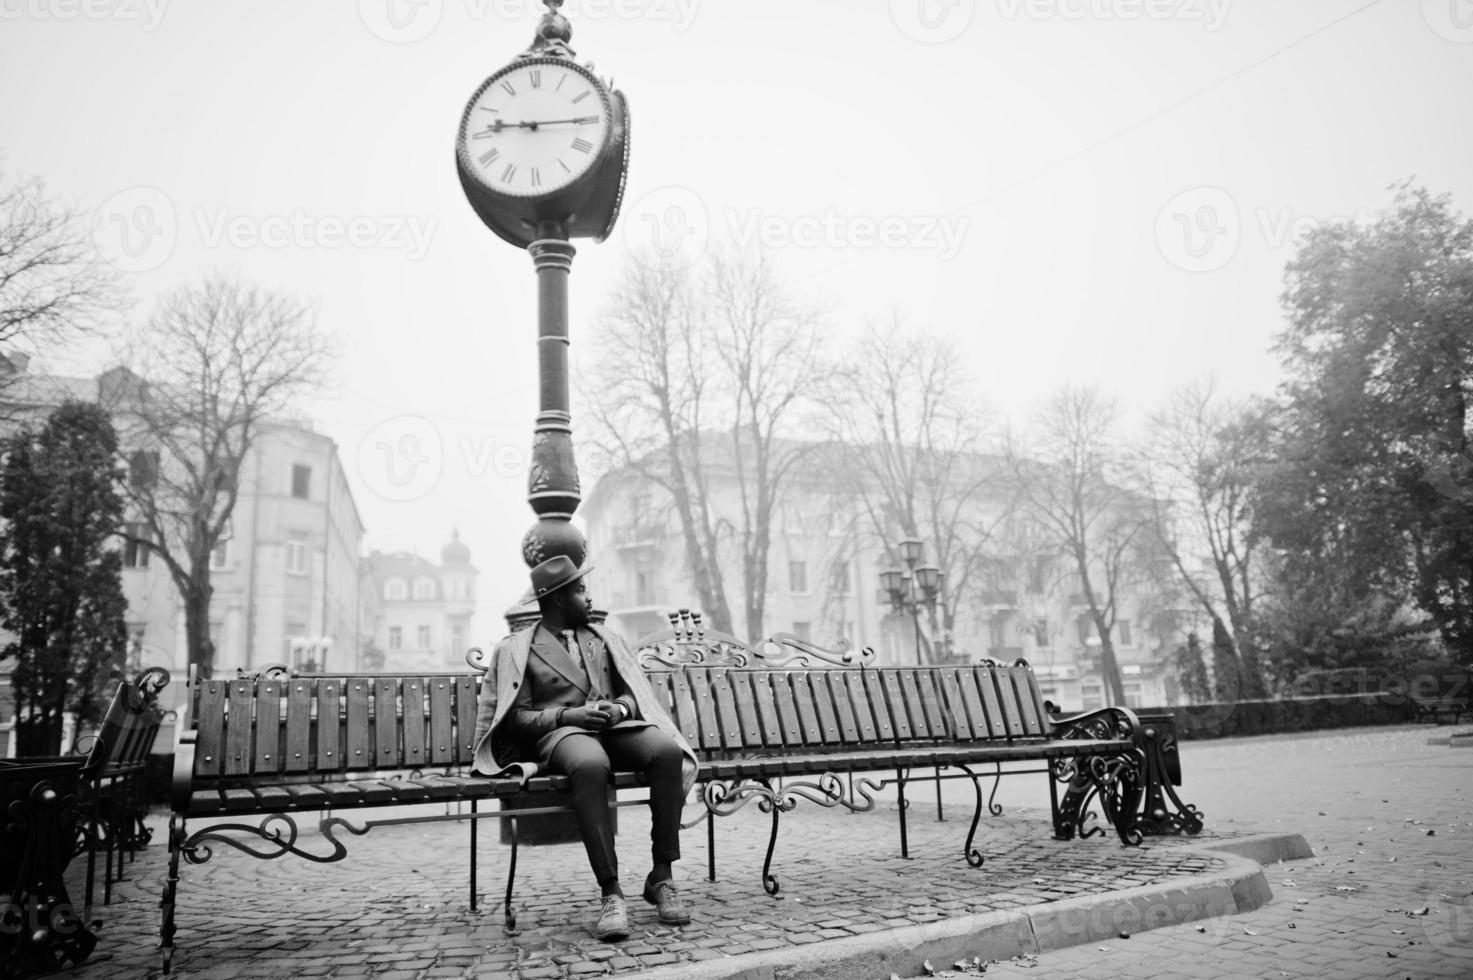 modelo de homem afro-americano elegante no casaco cinza, gravata do paletó e chapéu vermelho posou no banco contra o relógio grande. foto preto e branco.